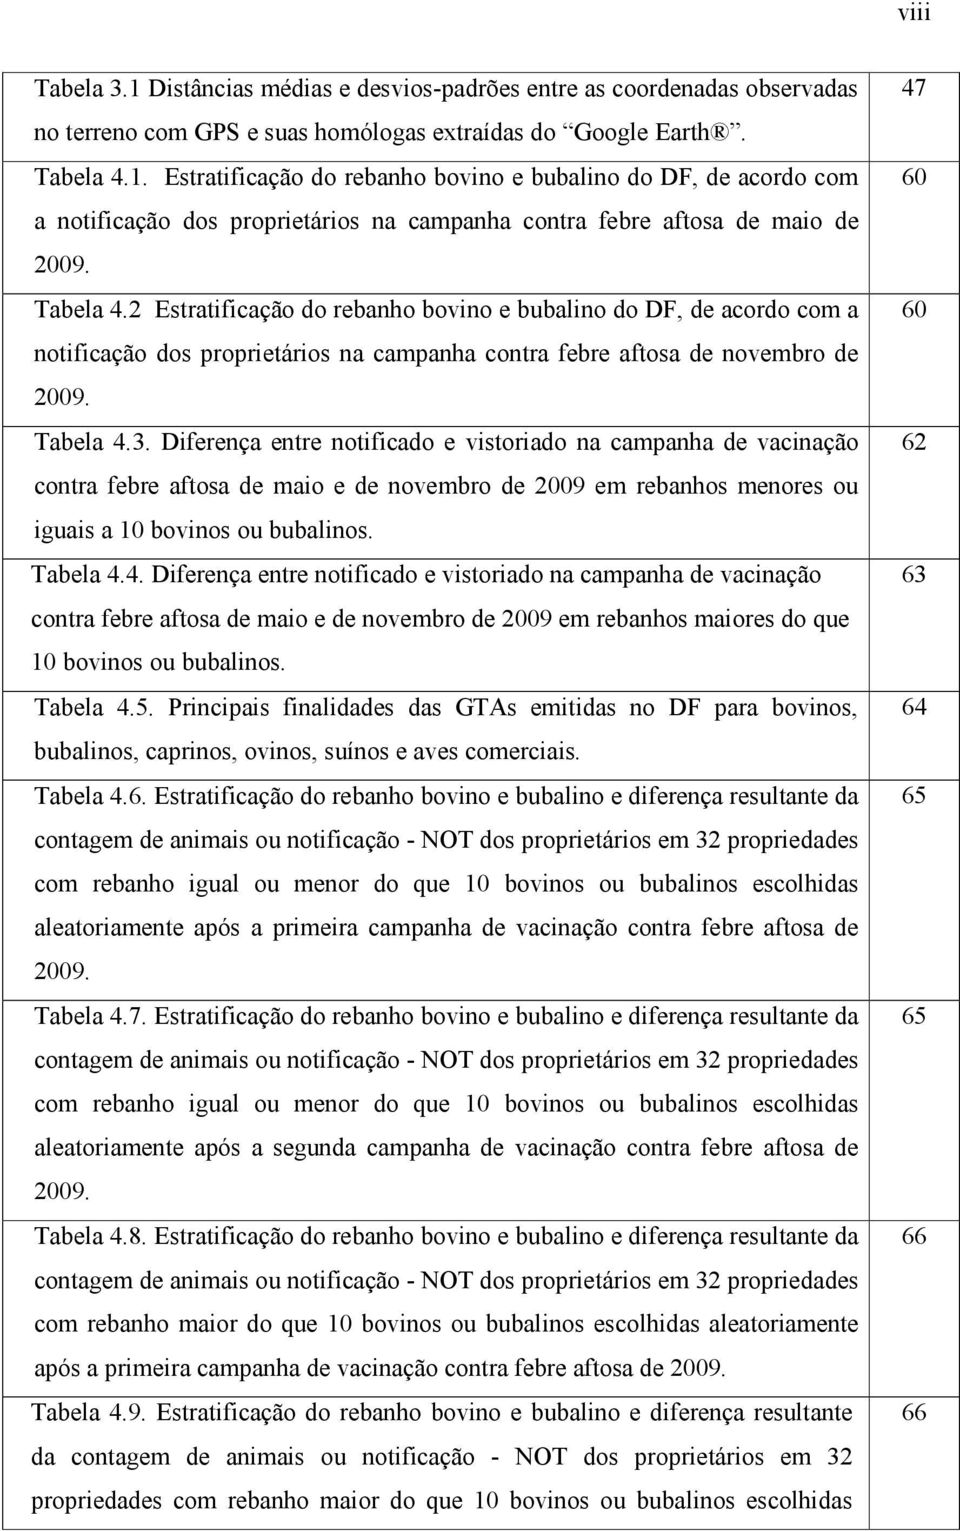 Diferença entre notificado e vistoriado na campanha de vacinação contra febre aftosa de maio e de novembro de 2009 em rebanhos menores ou iguais a 10 bovinos ou bubalinos. Tabela 4.